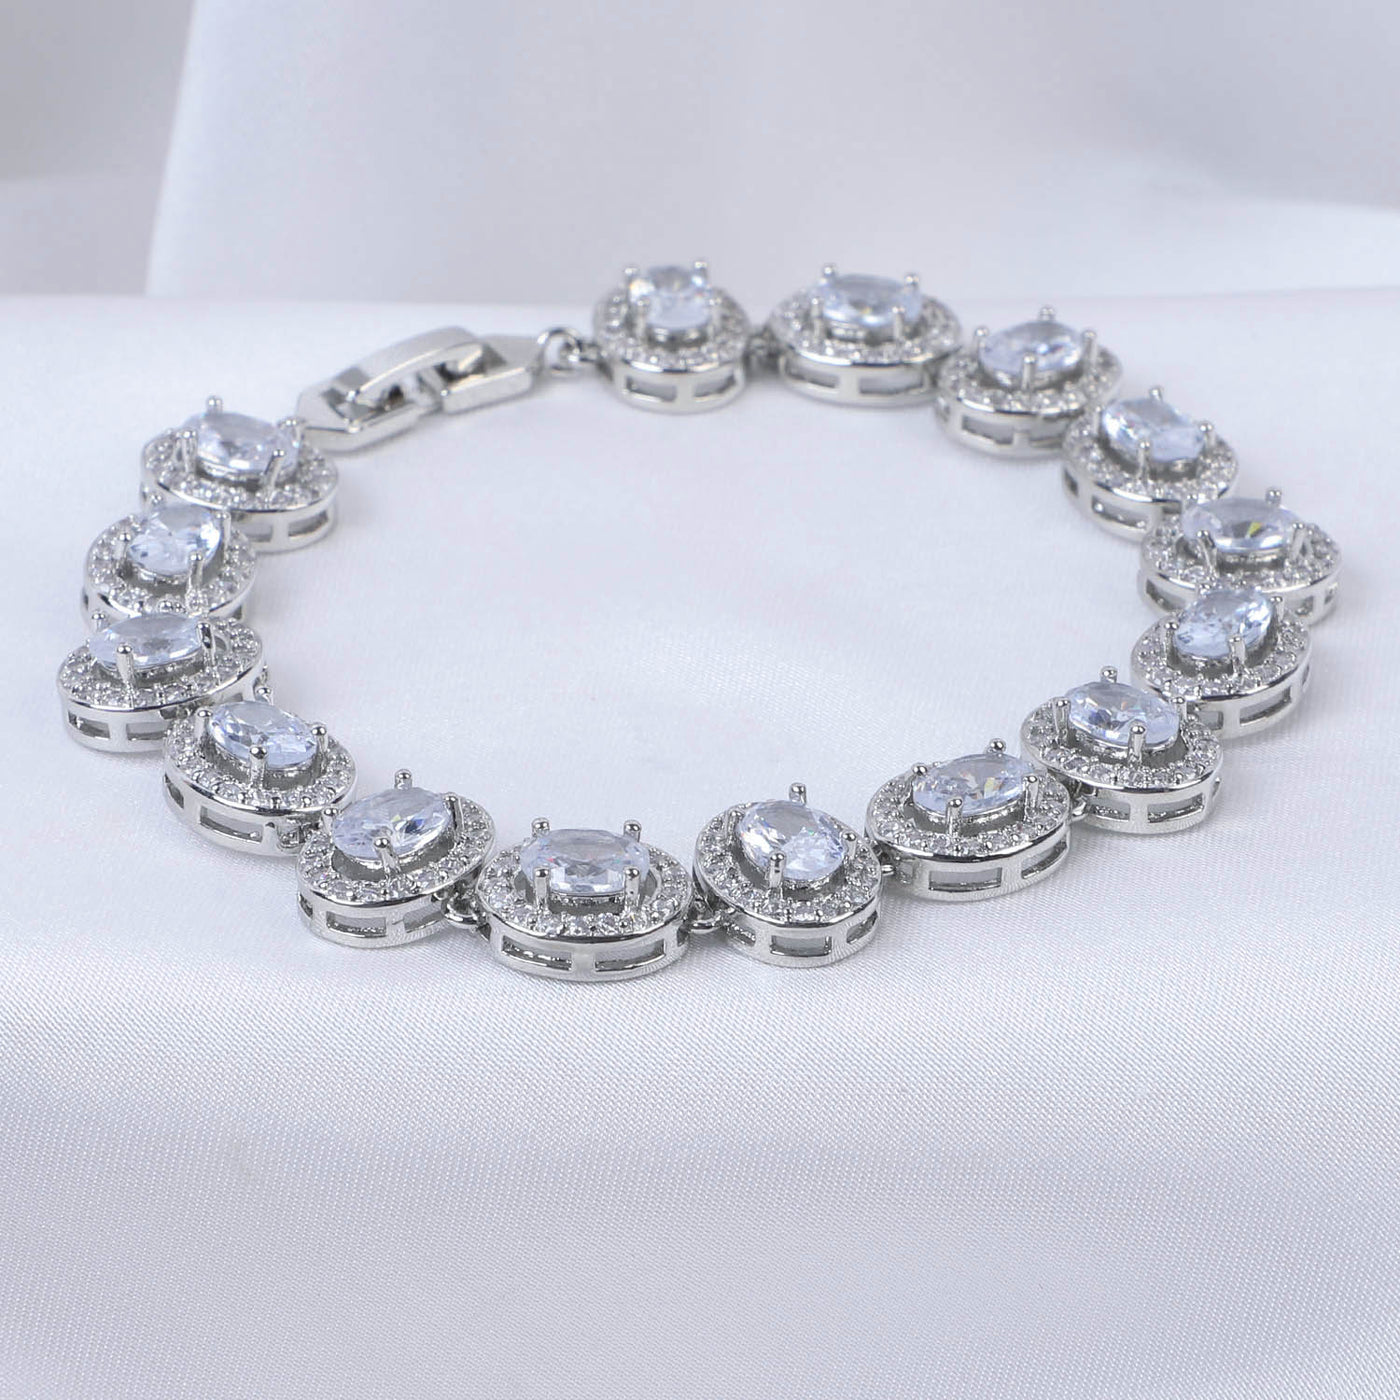 Fancy Chain Bracelets For Girls